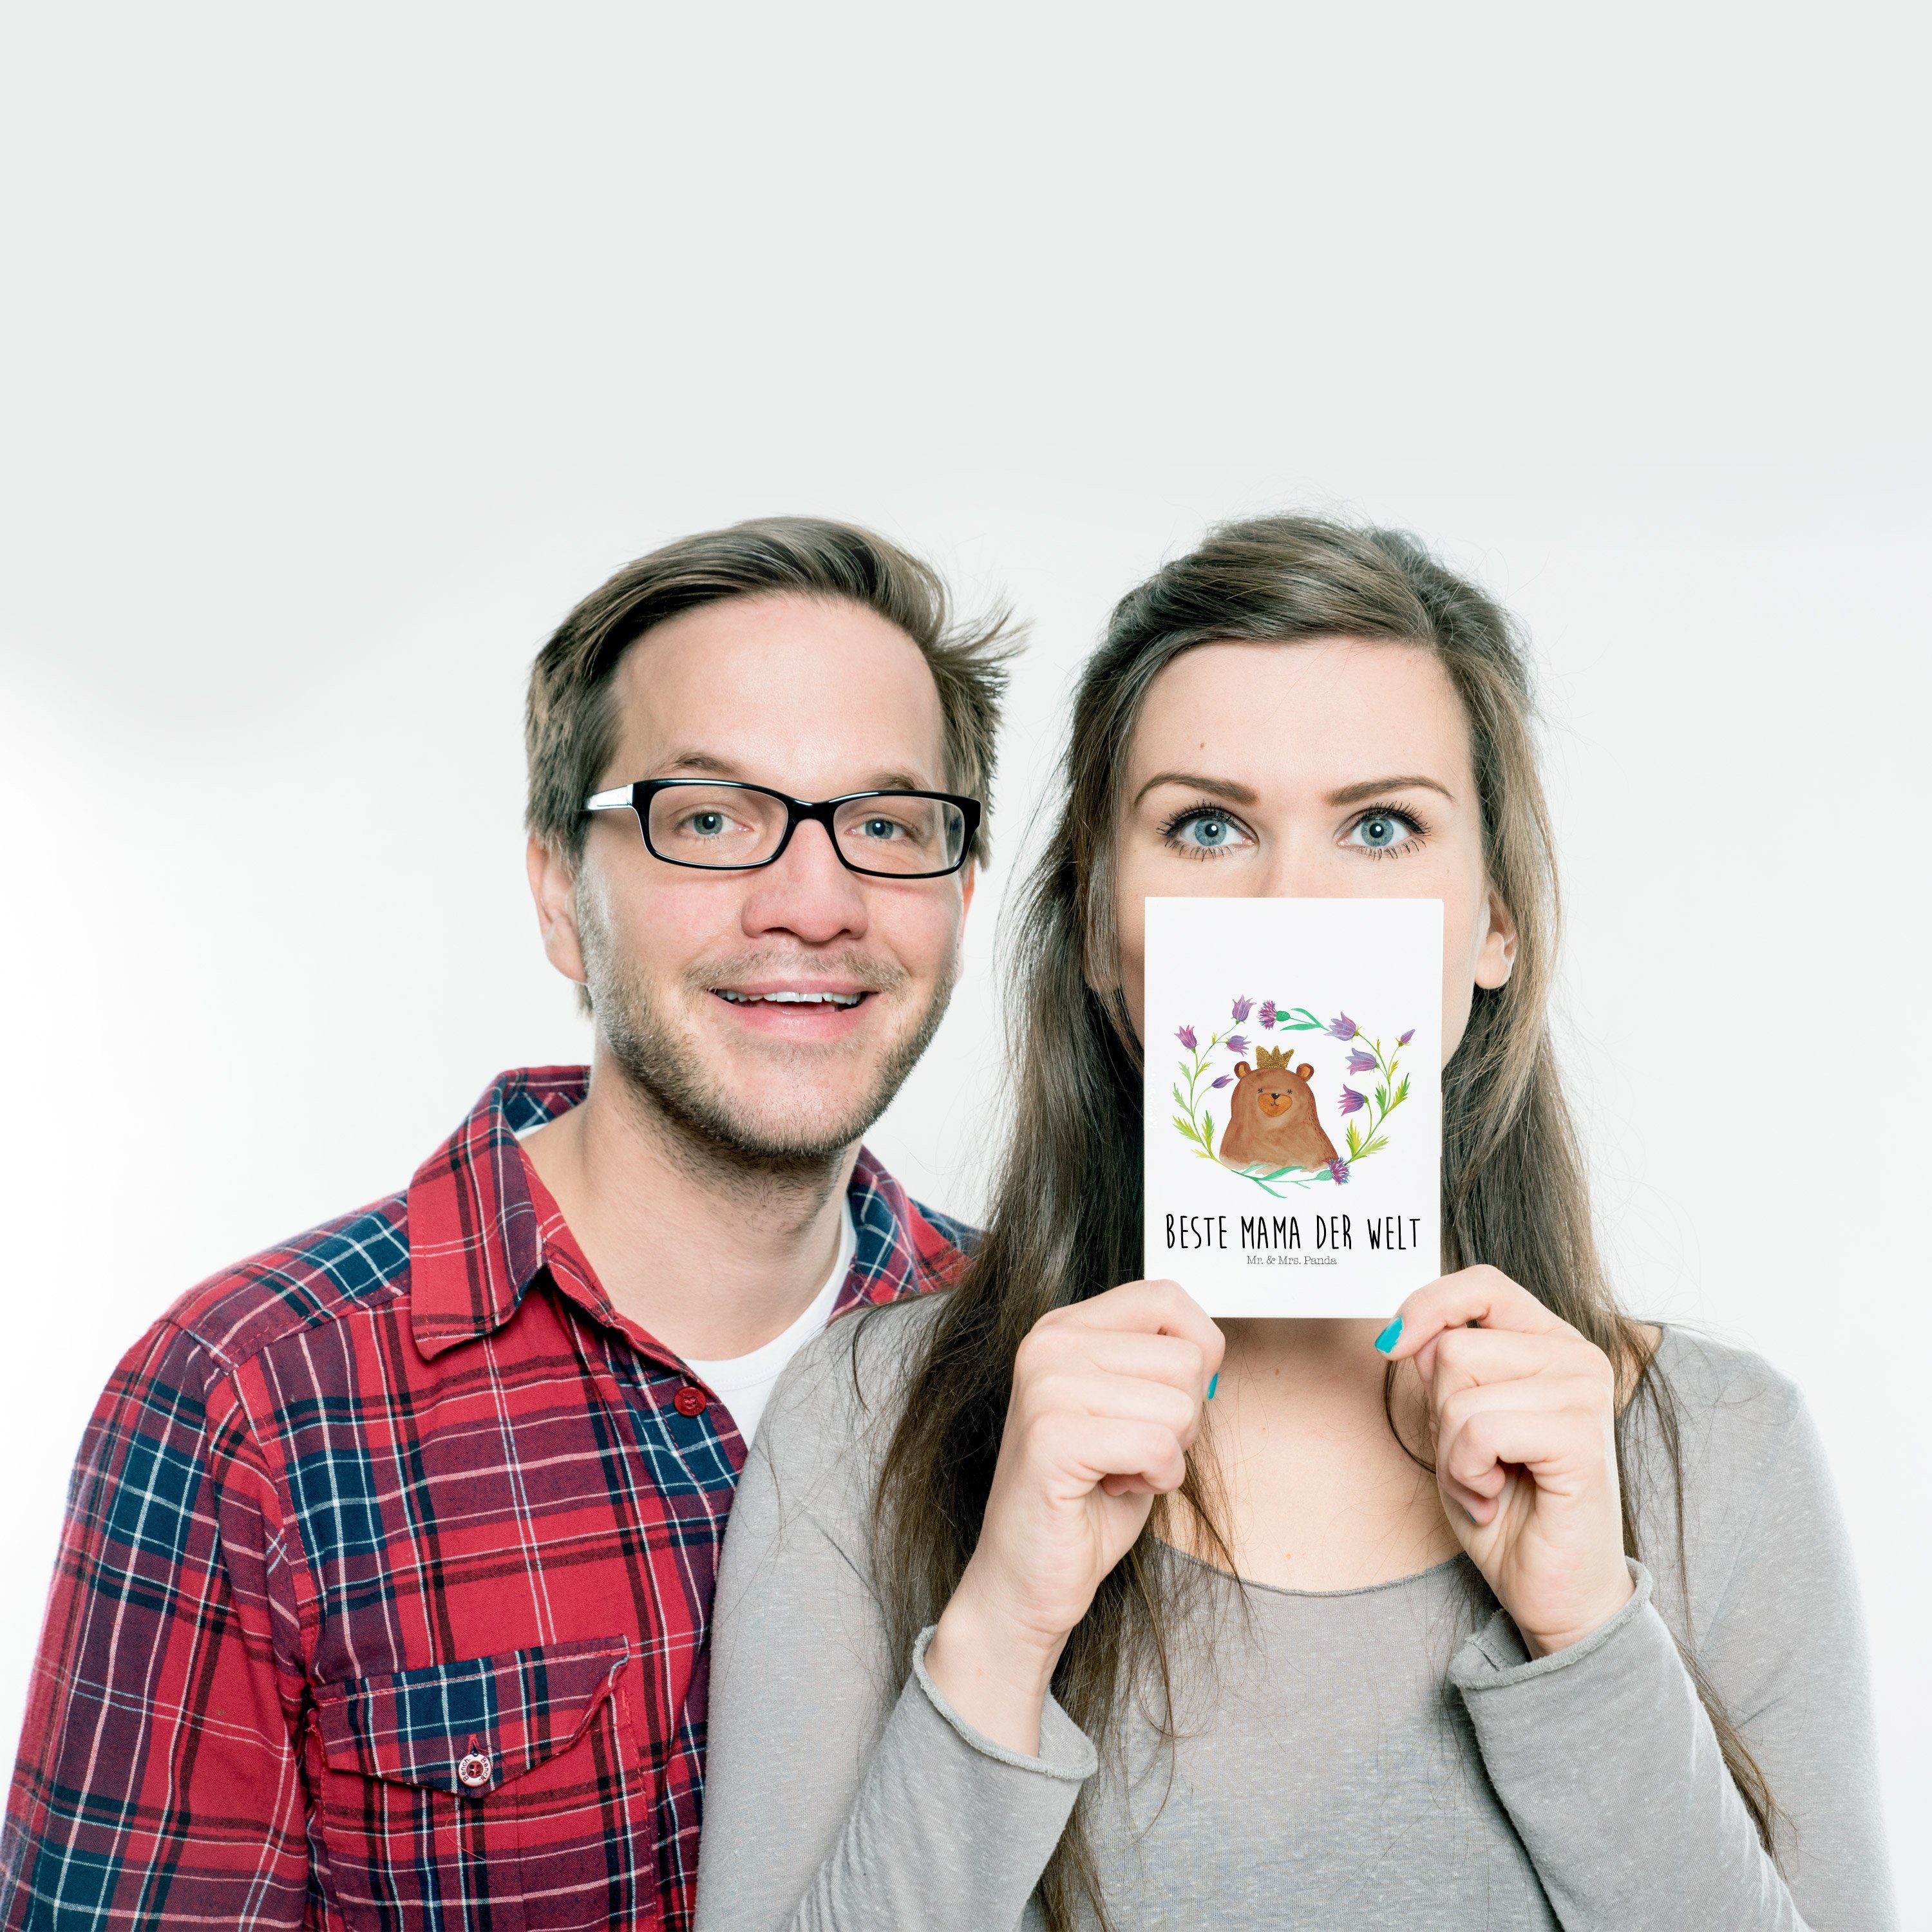 Mr. & Mrs. Panda Weiß Bär - Ans - Postkarte Geburtstagskarte, Königin Lieblingsmensch, Geschenk